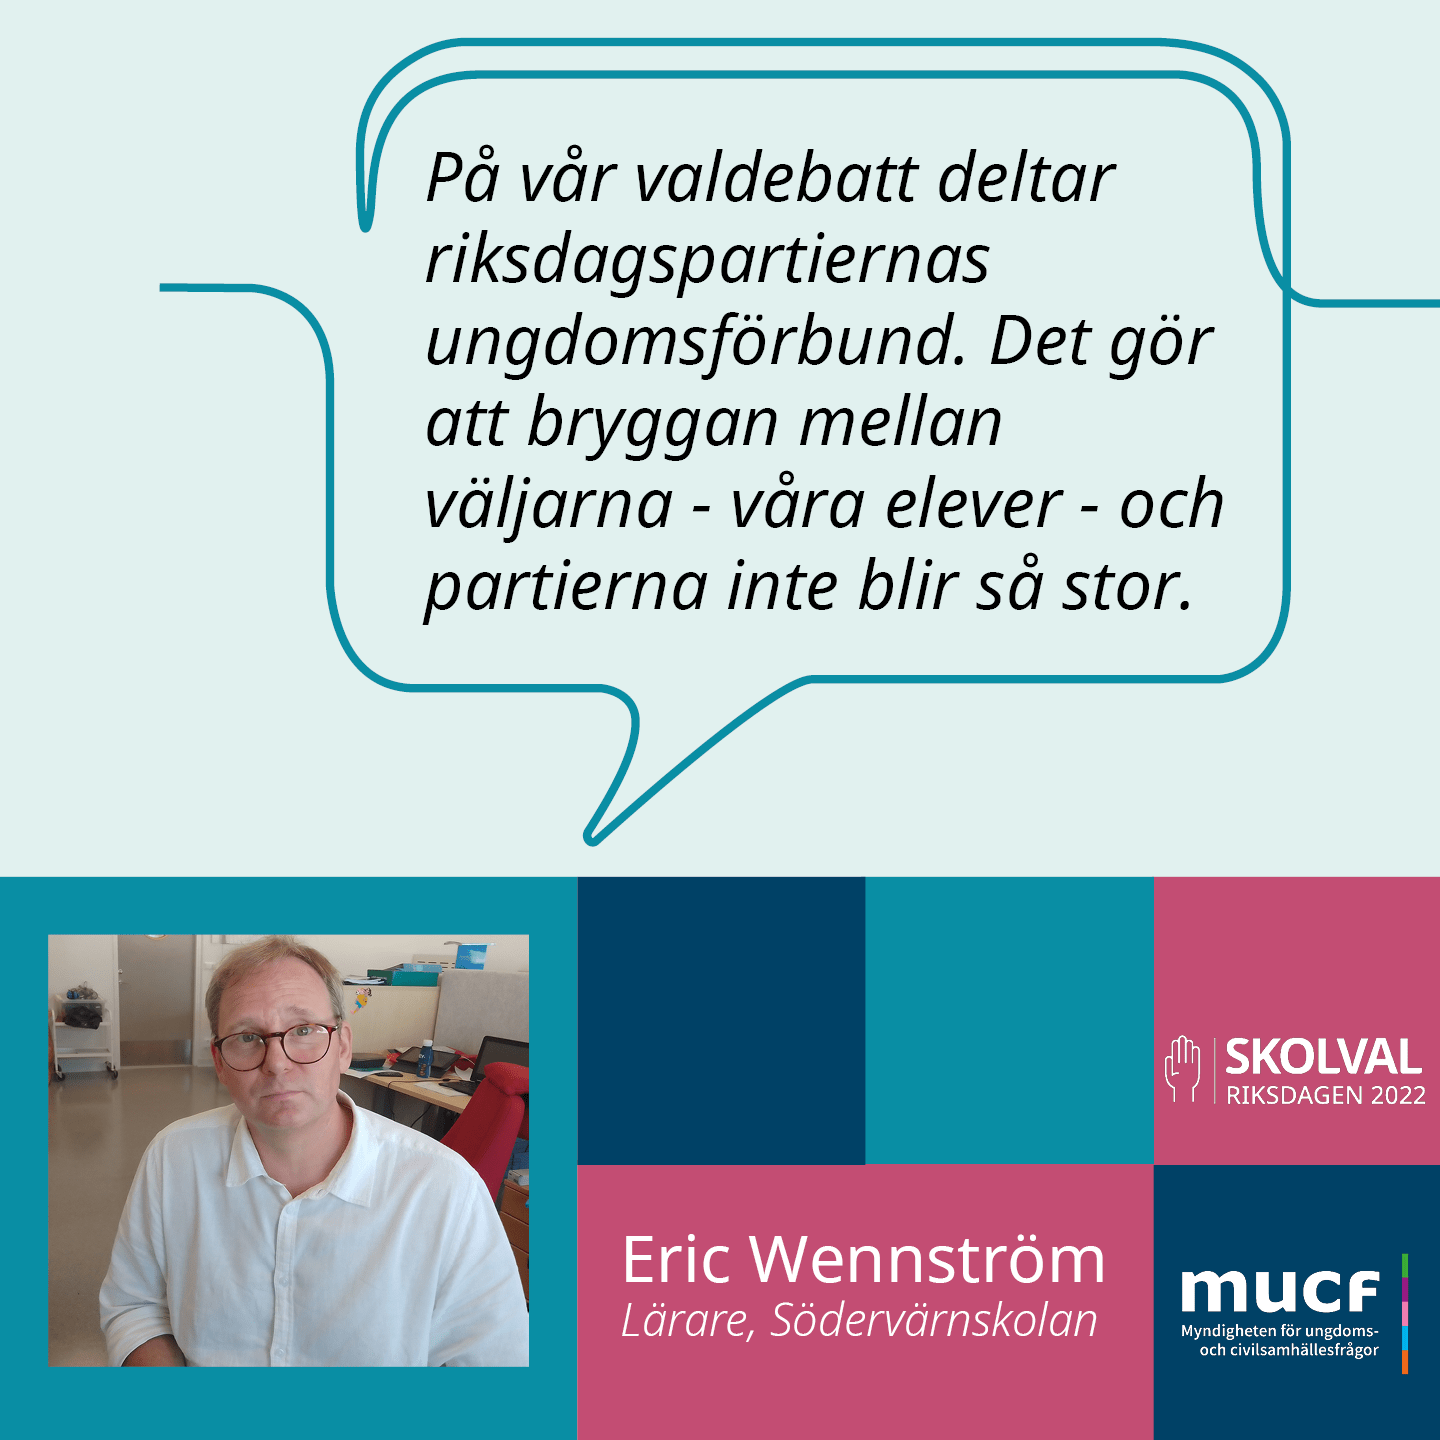 Eric Wennström och citatet På vår valdebatt deltar riksdagspartiernas ungdomsförbund. Det gör att bryggan mellan väljarna - våra elever - och partierna inte blir så stor.